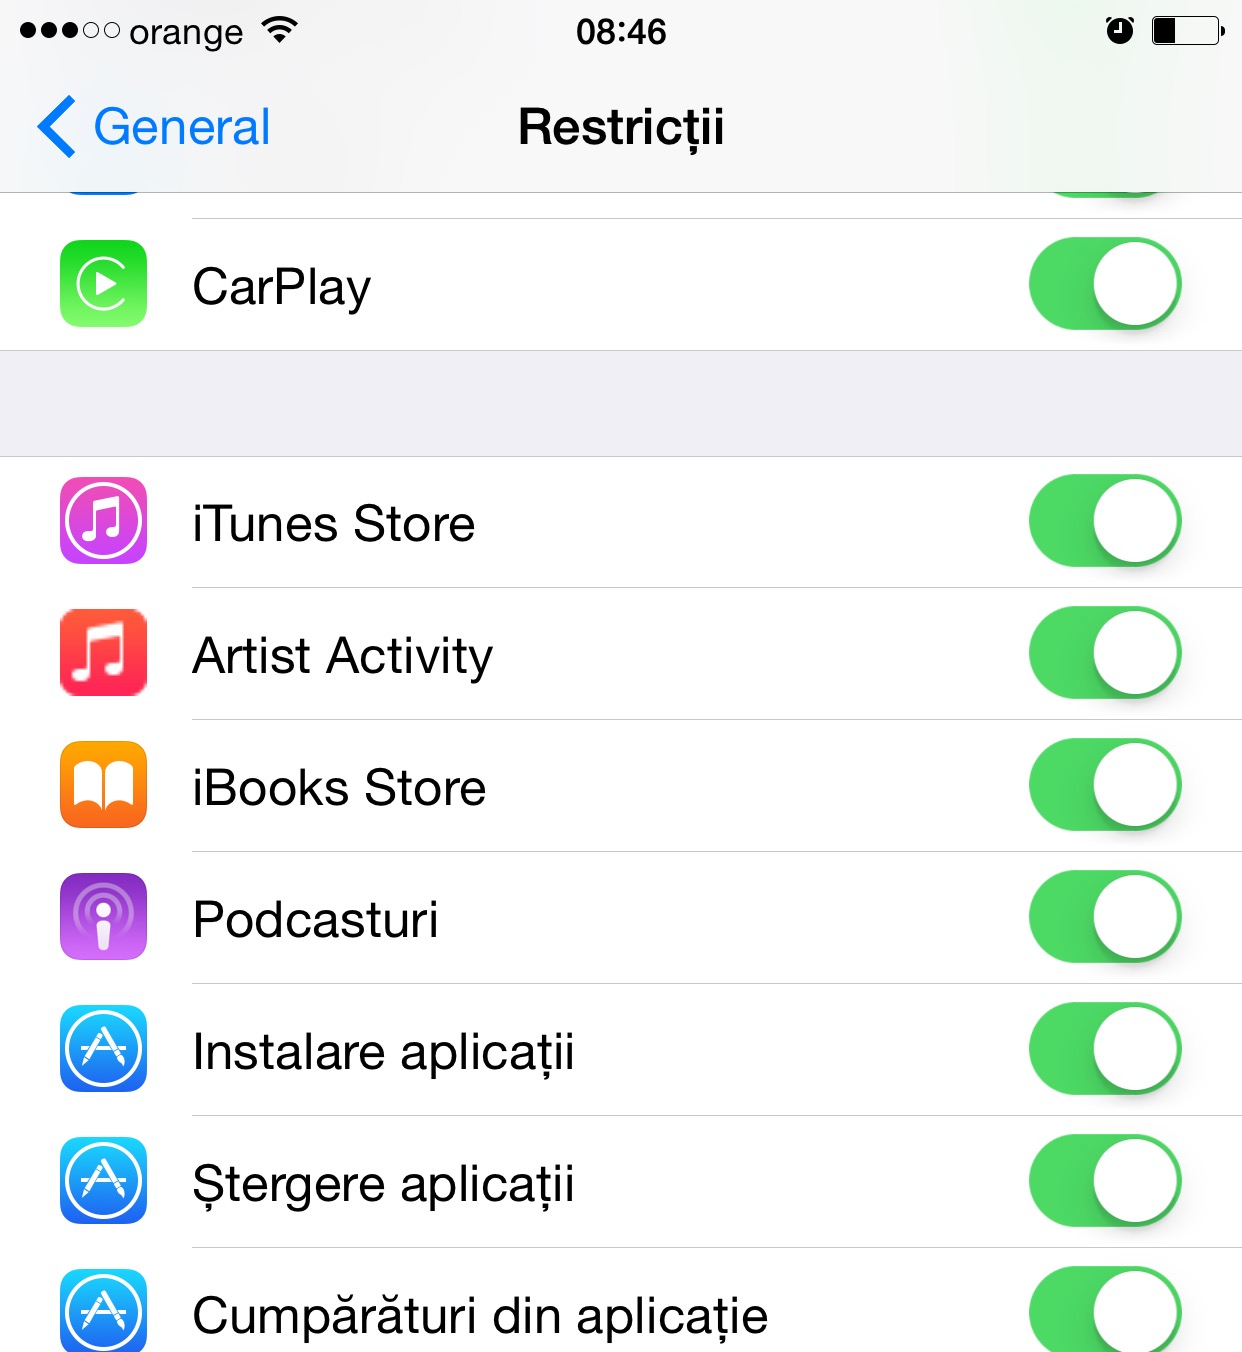 Apple Music iOS 8.4 Artiestenactiviteit